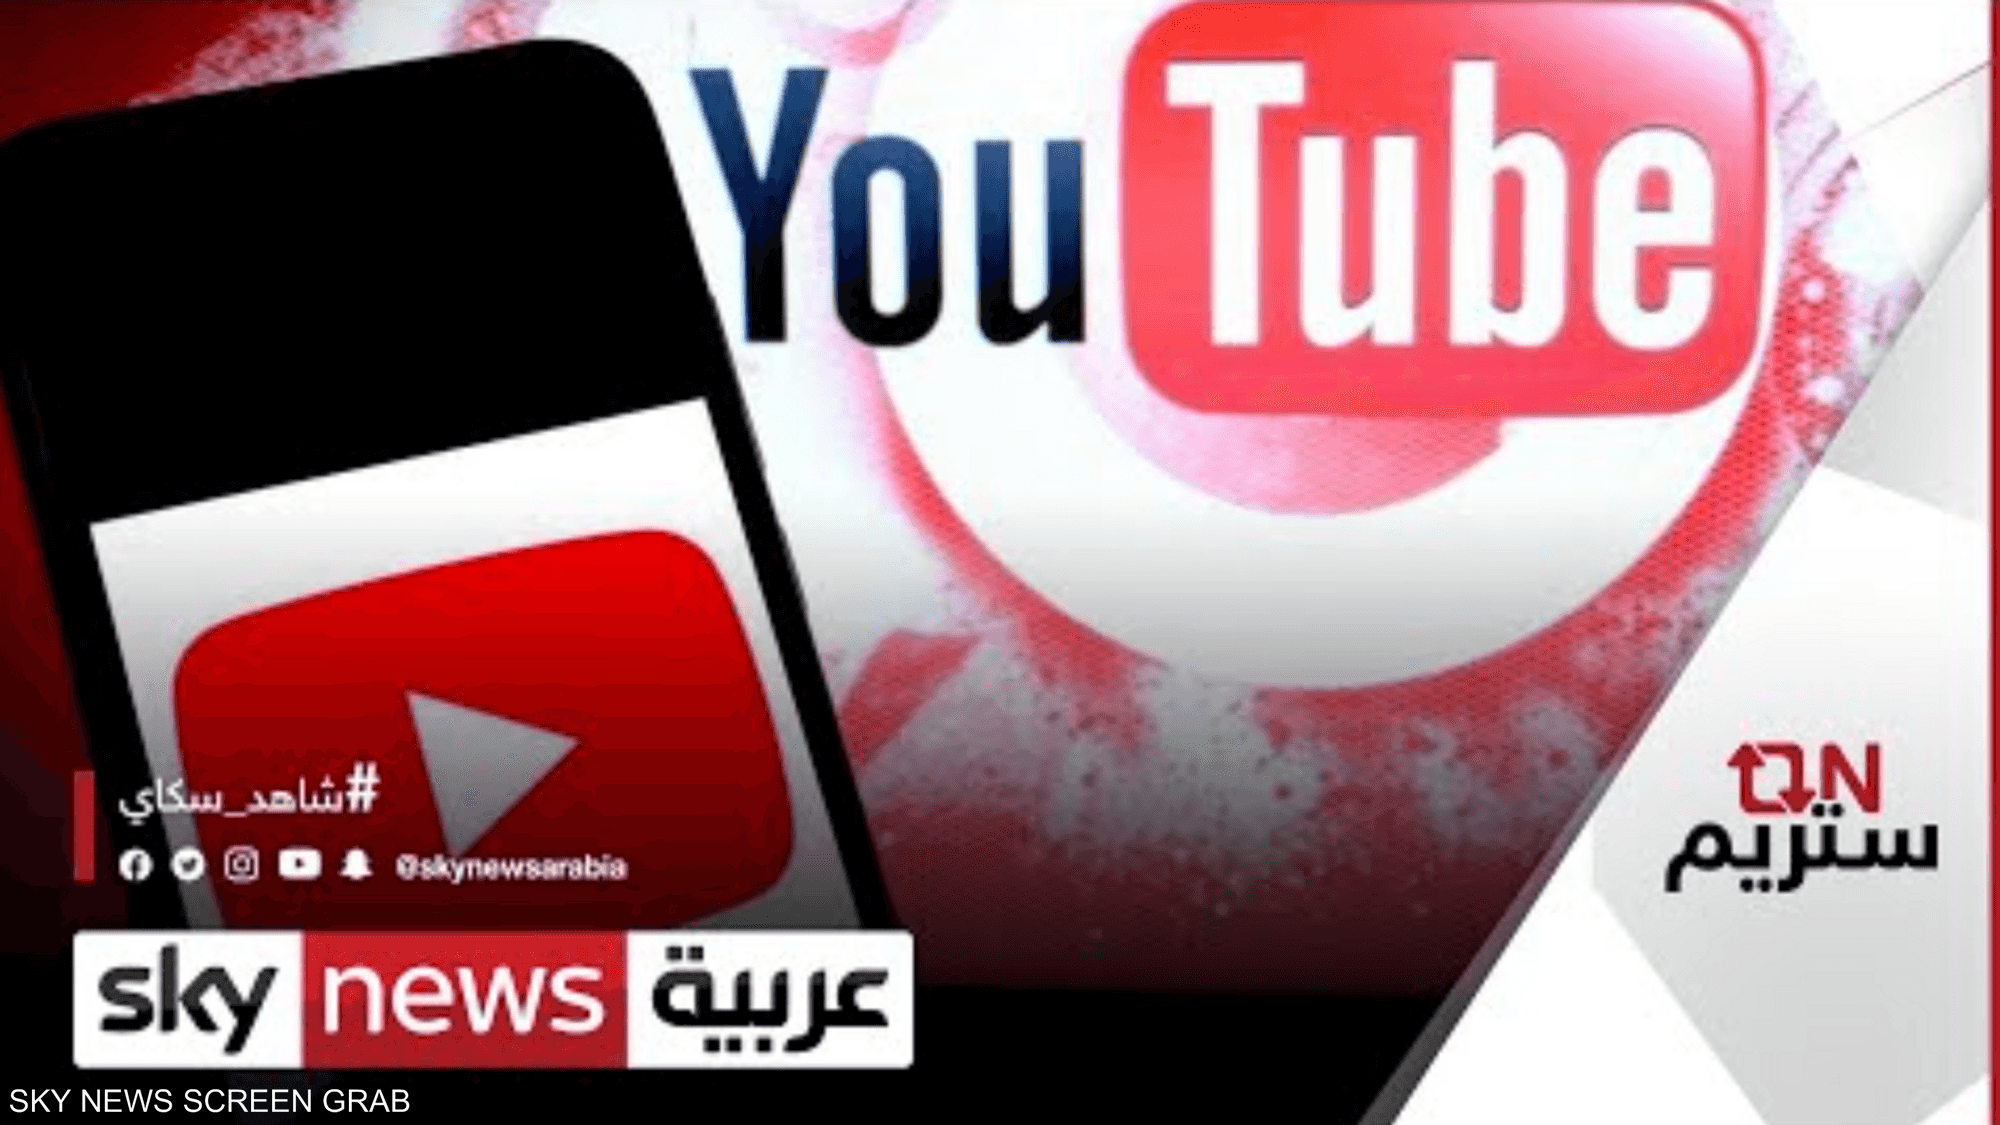 يوتيوب يعلن فرض ضريبة على صناع المحتوى